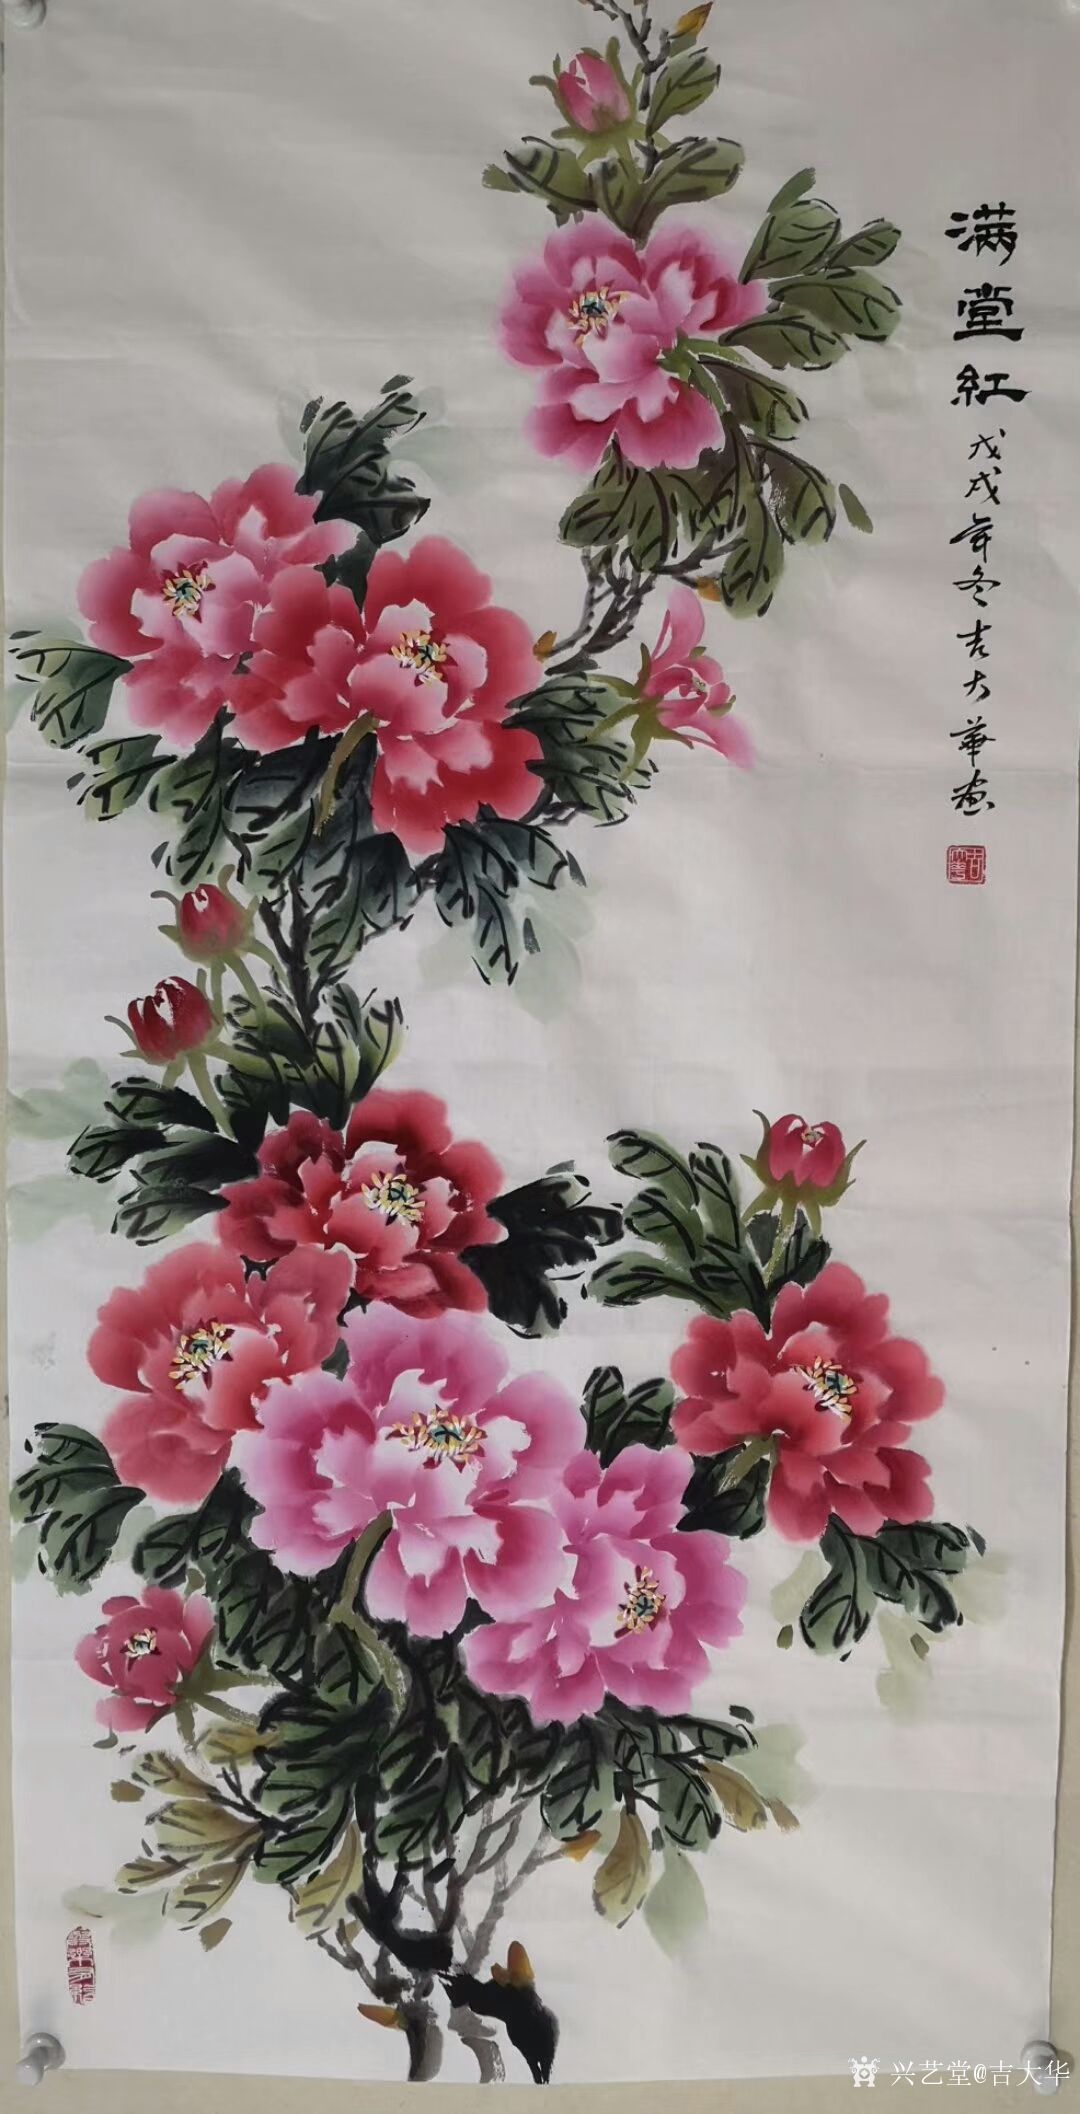 吉大华-国画牡丹作品满堂红艳溢香浓冰清